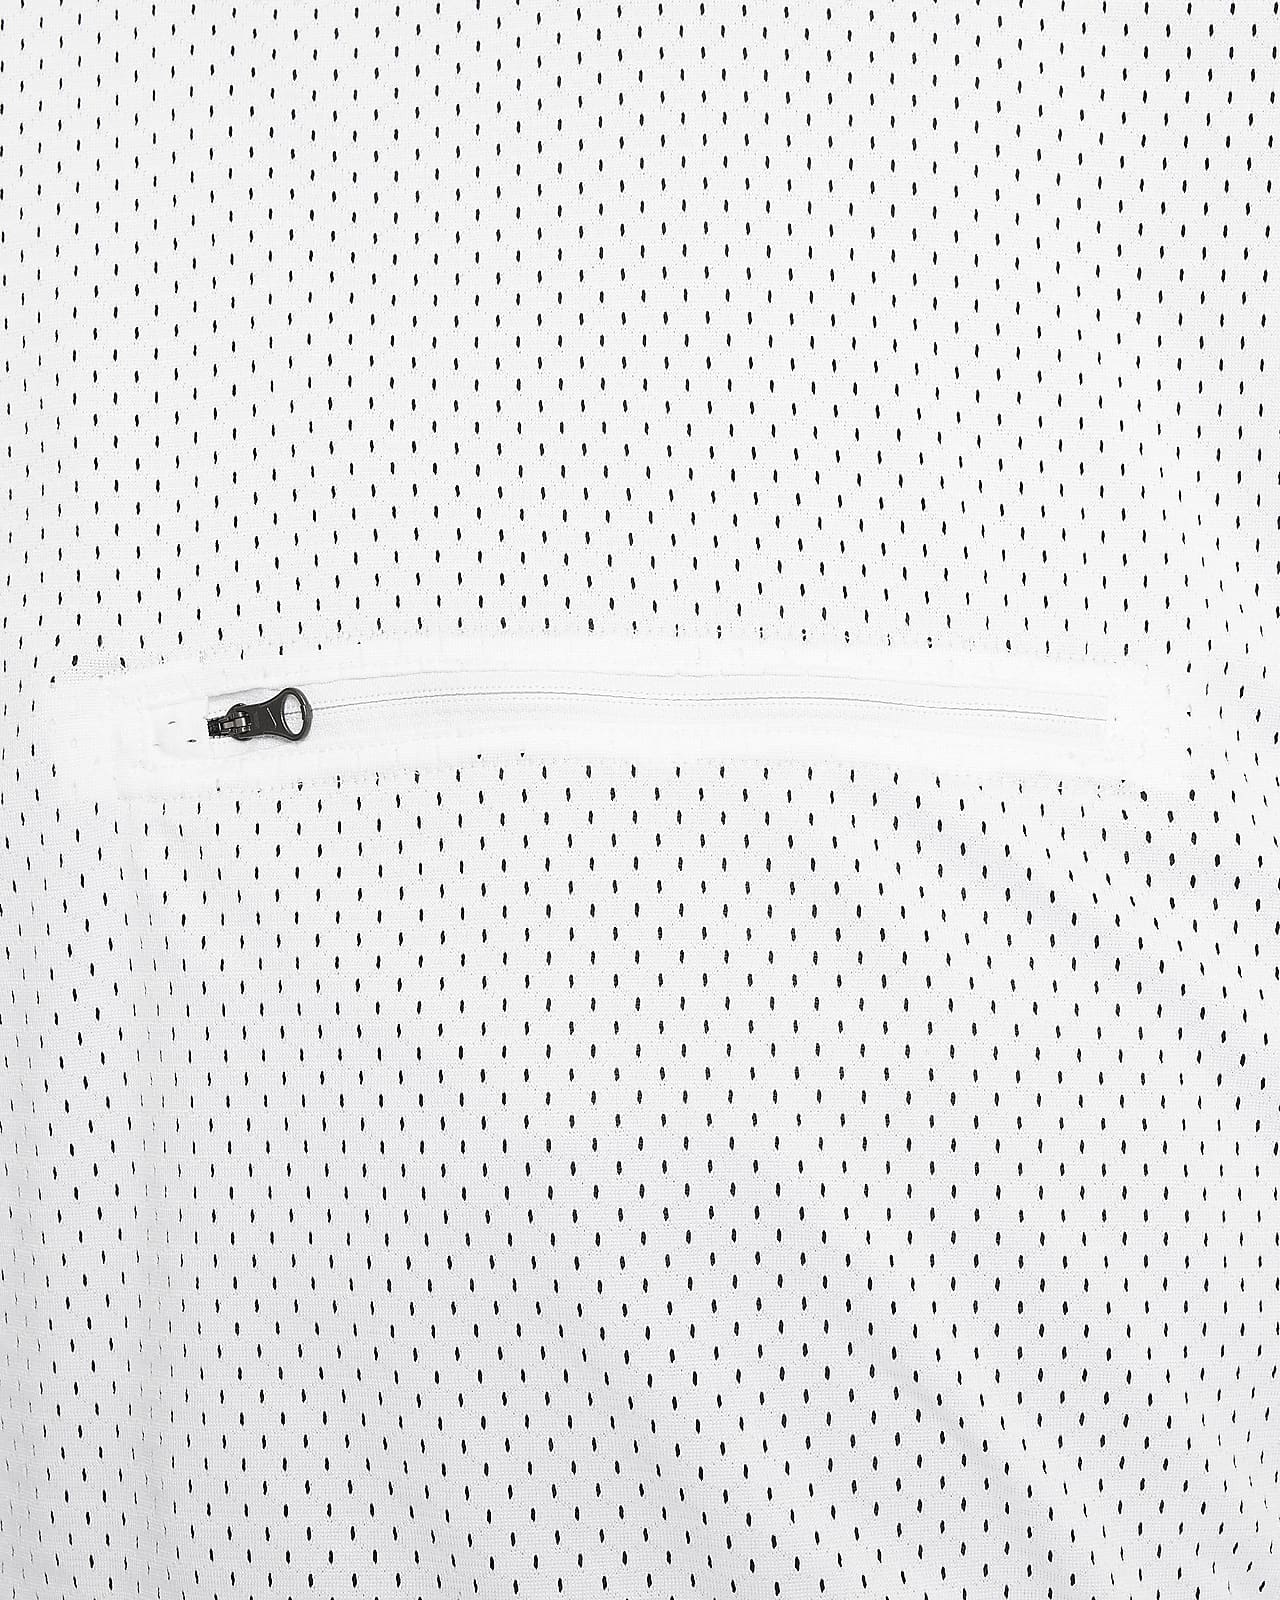 Koszulka do koszykówki dwustronna dla dzieci Nike Culture of Basketball  DX5515 / 410/midnight navy/cobalt bliss/white, Cena, Opinie